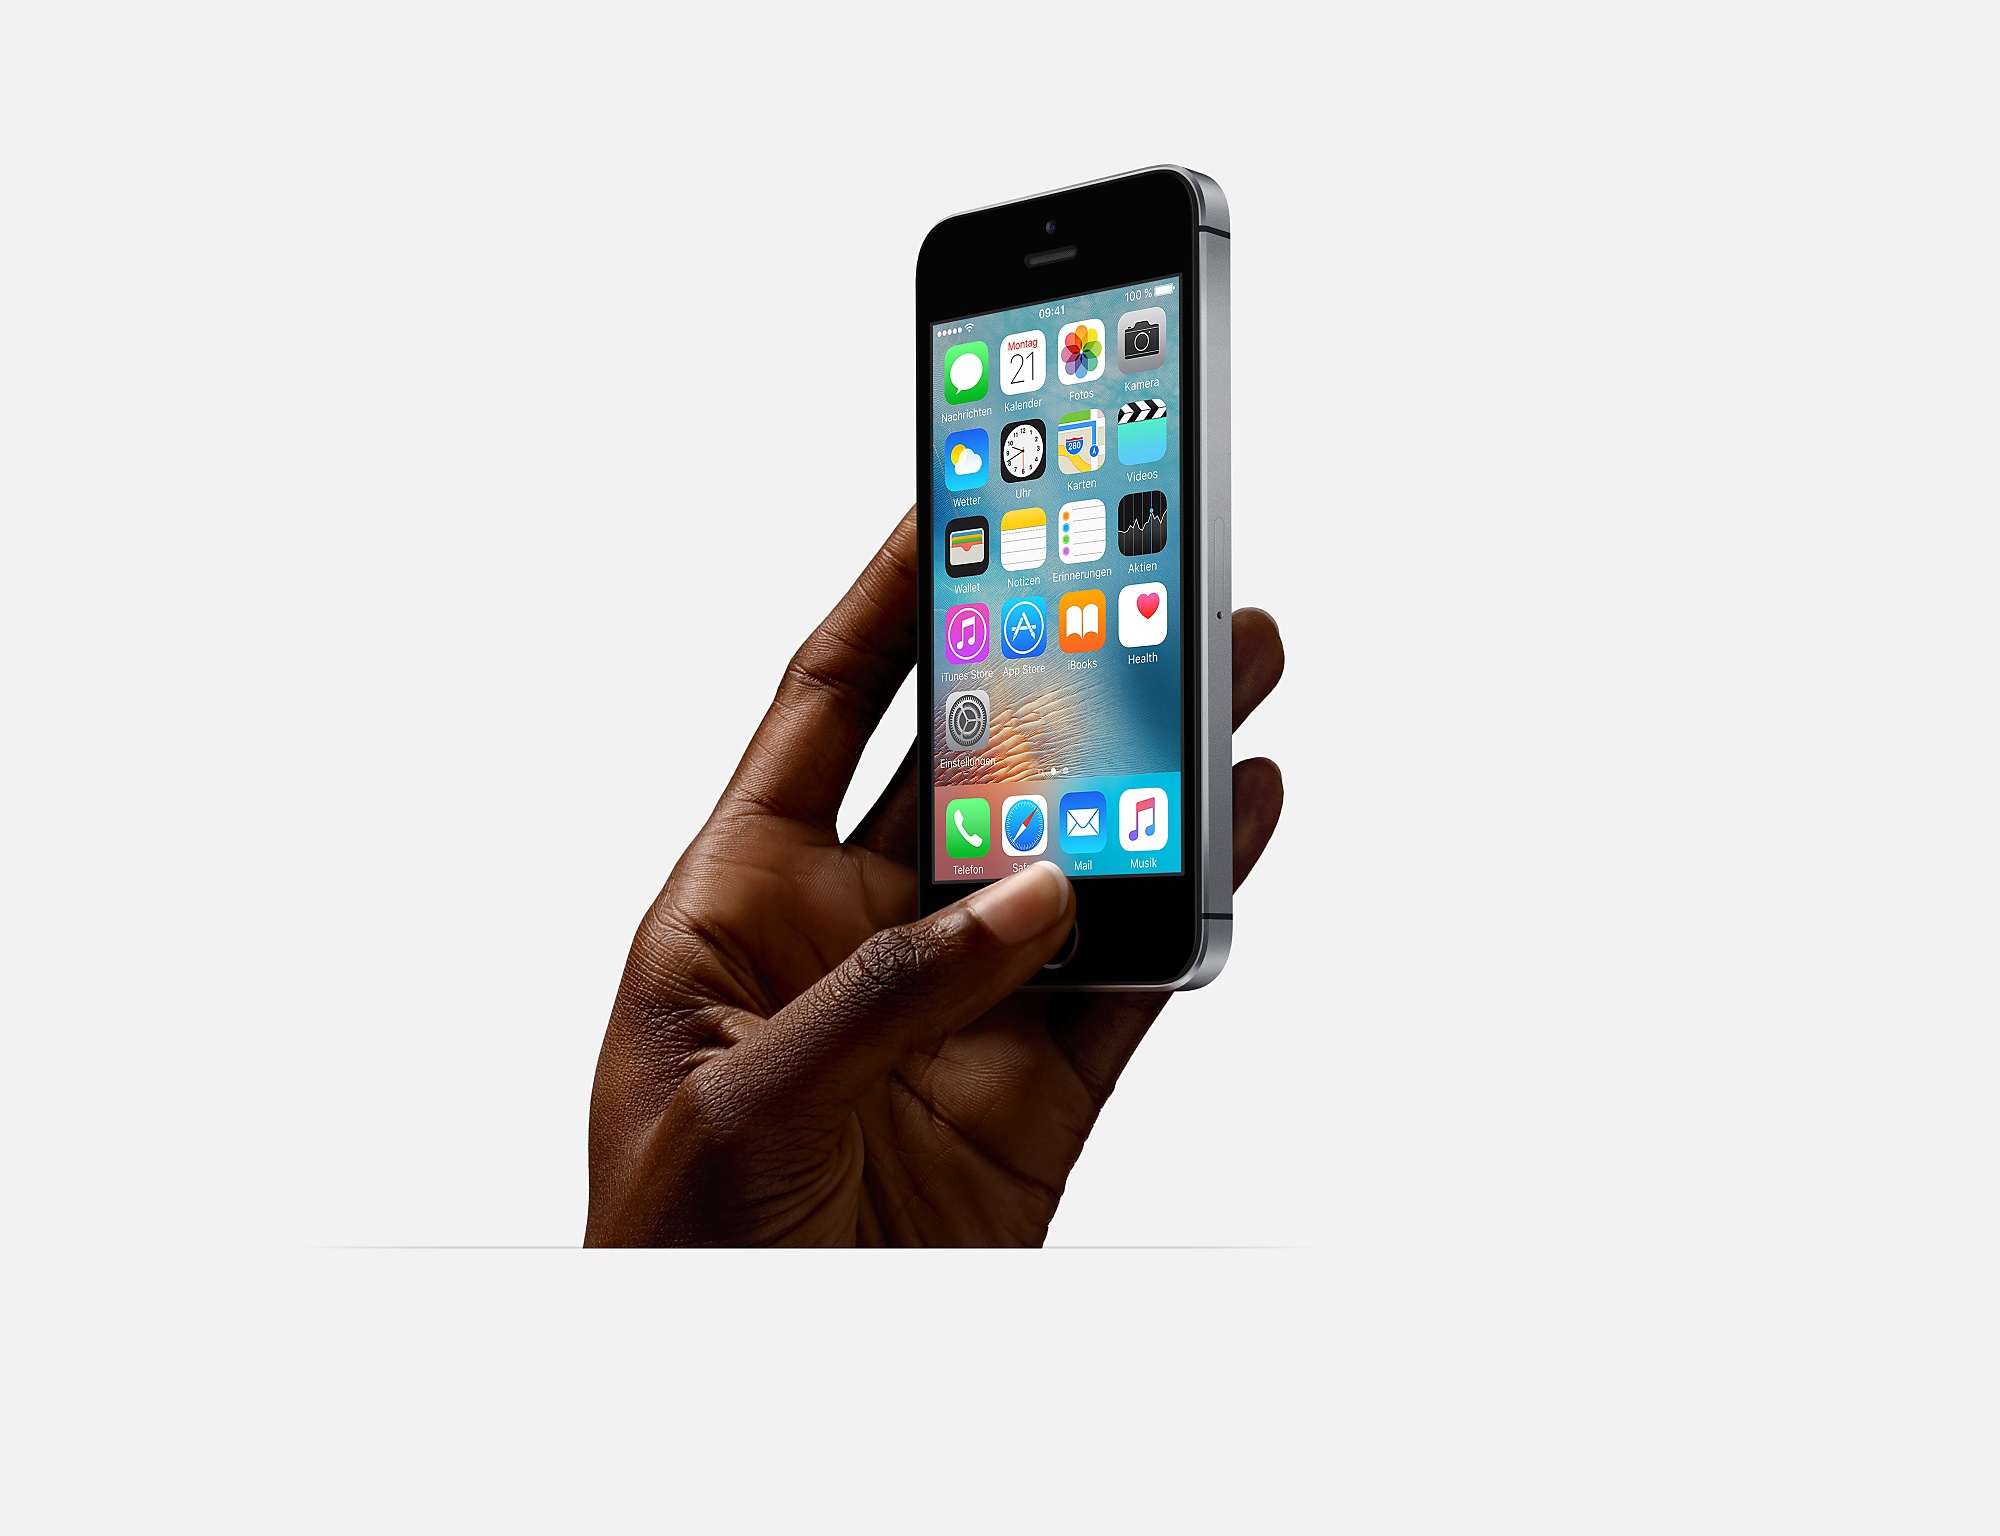 Billig zu haben: Apple iPhone SE 32 GB 2017er Edition zum Sparpreis von nur 299,99 €